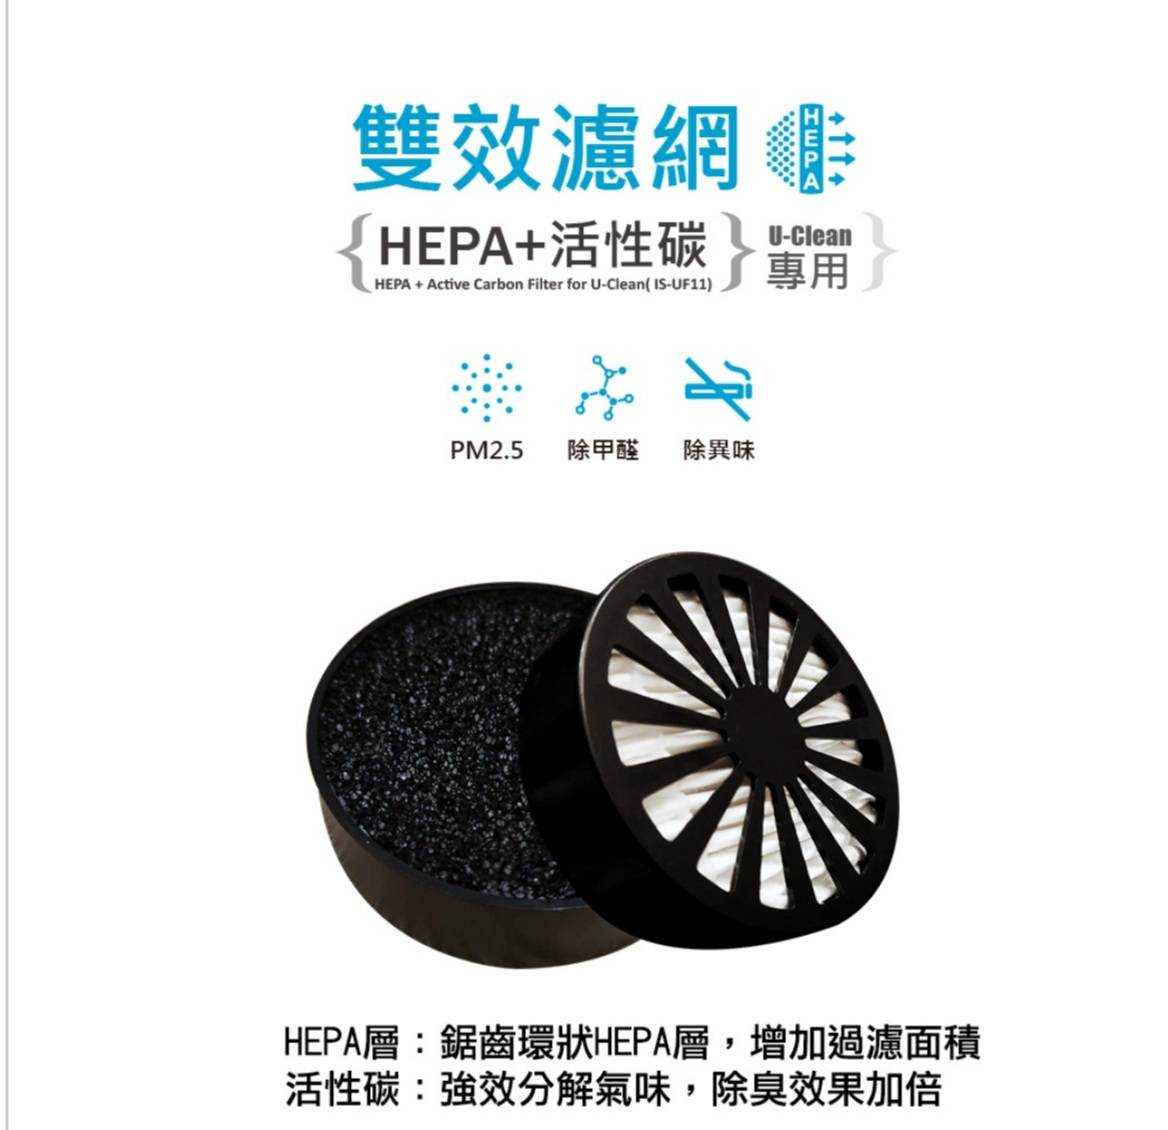 〈U-Clean專用〉HEAP/活性碳二合一濾網1入─IS-UF11